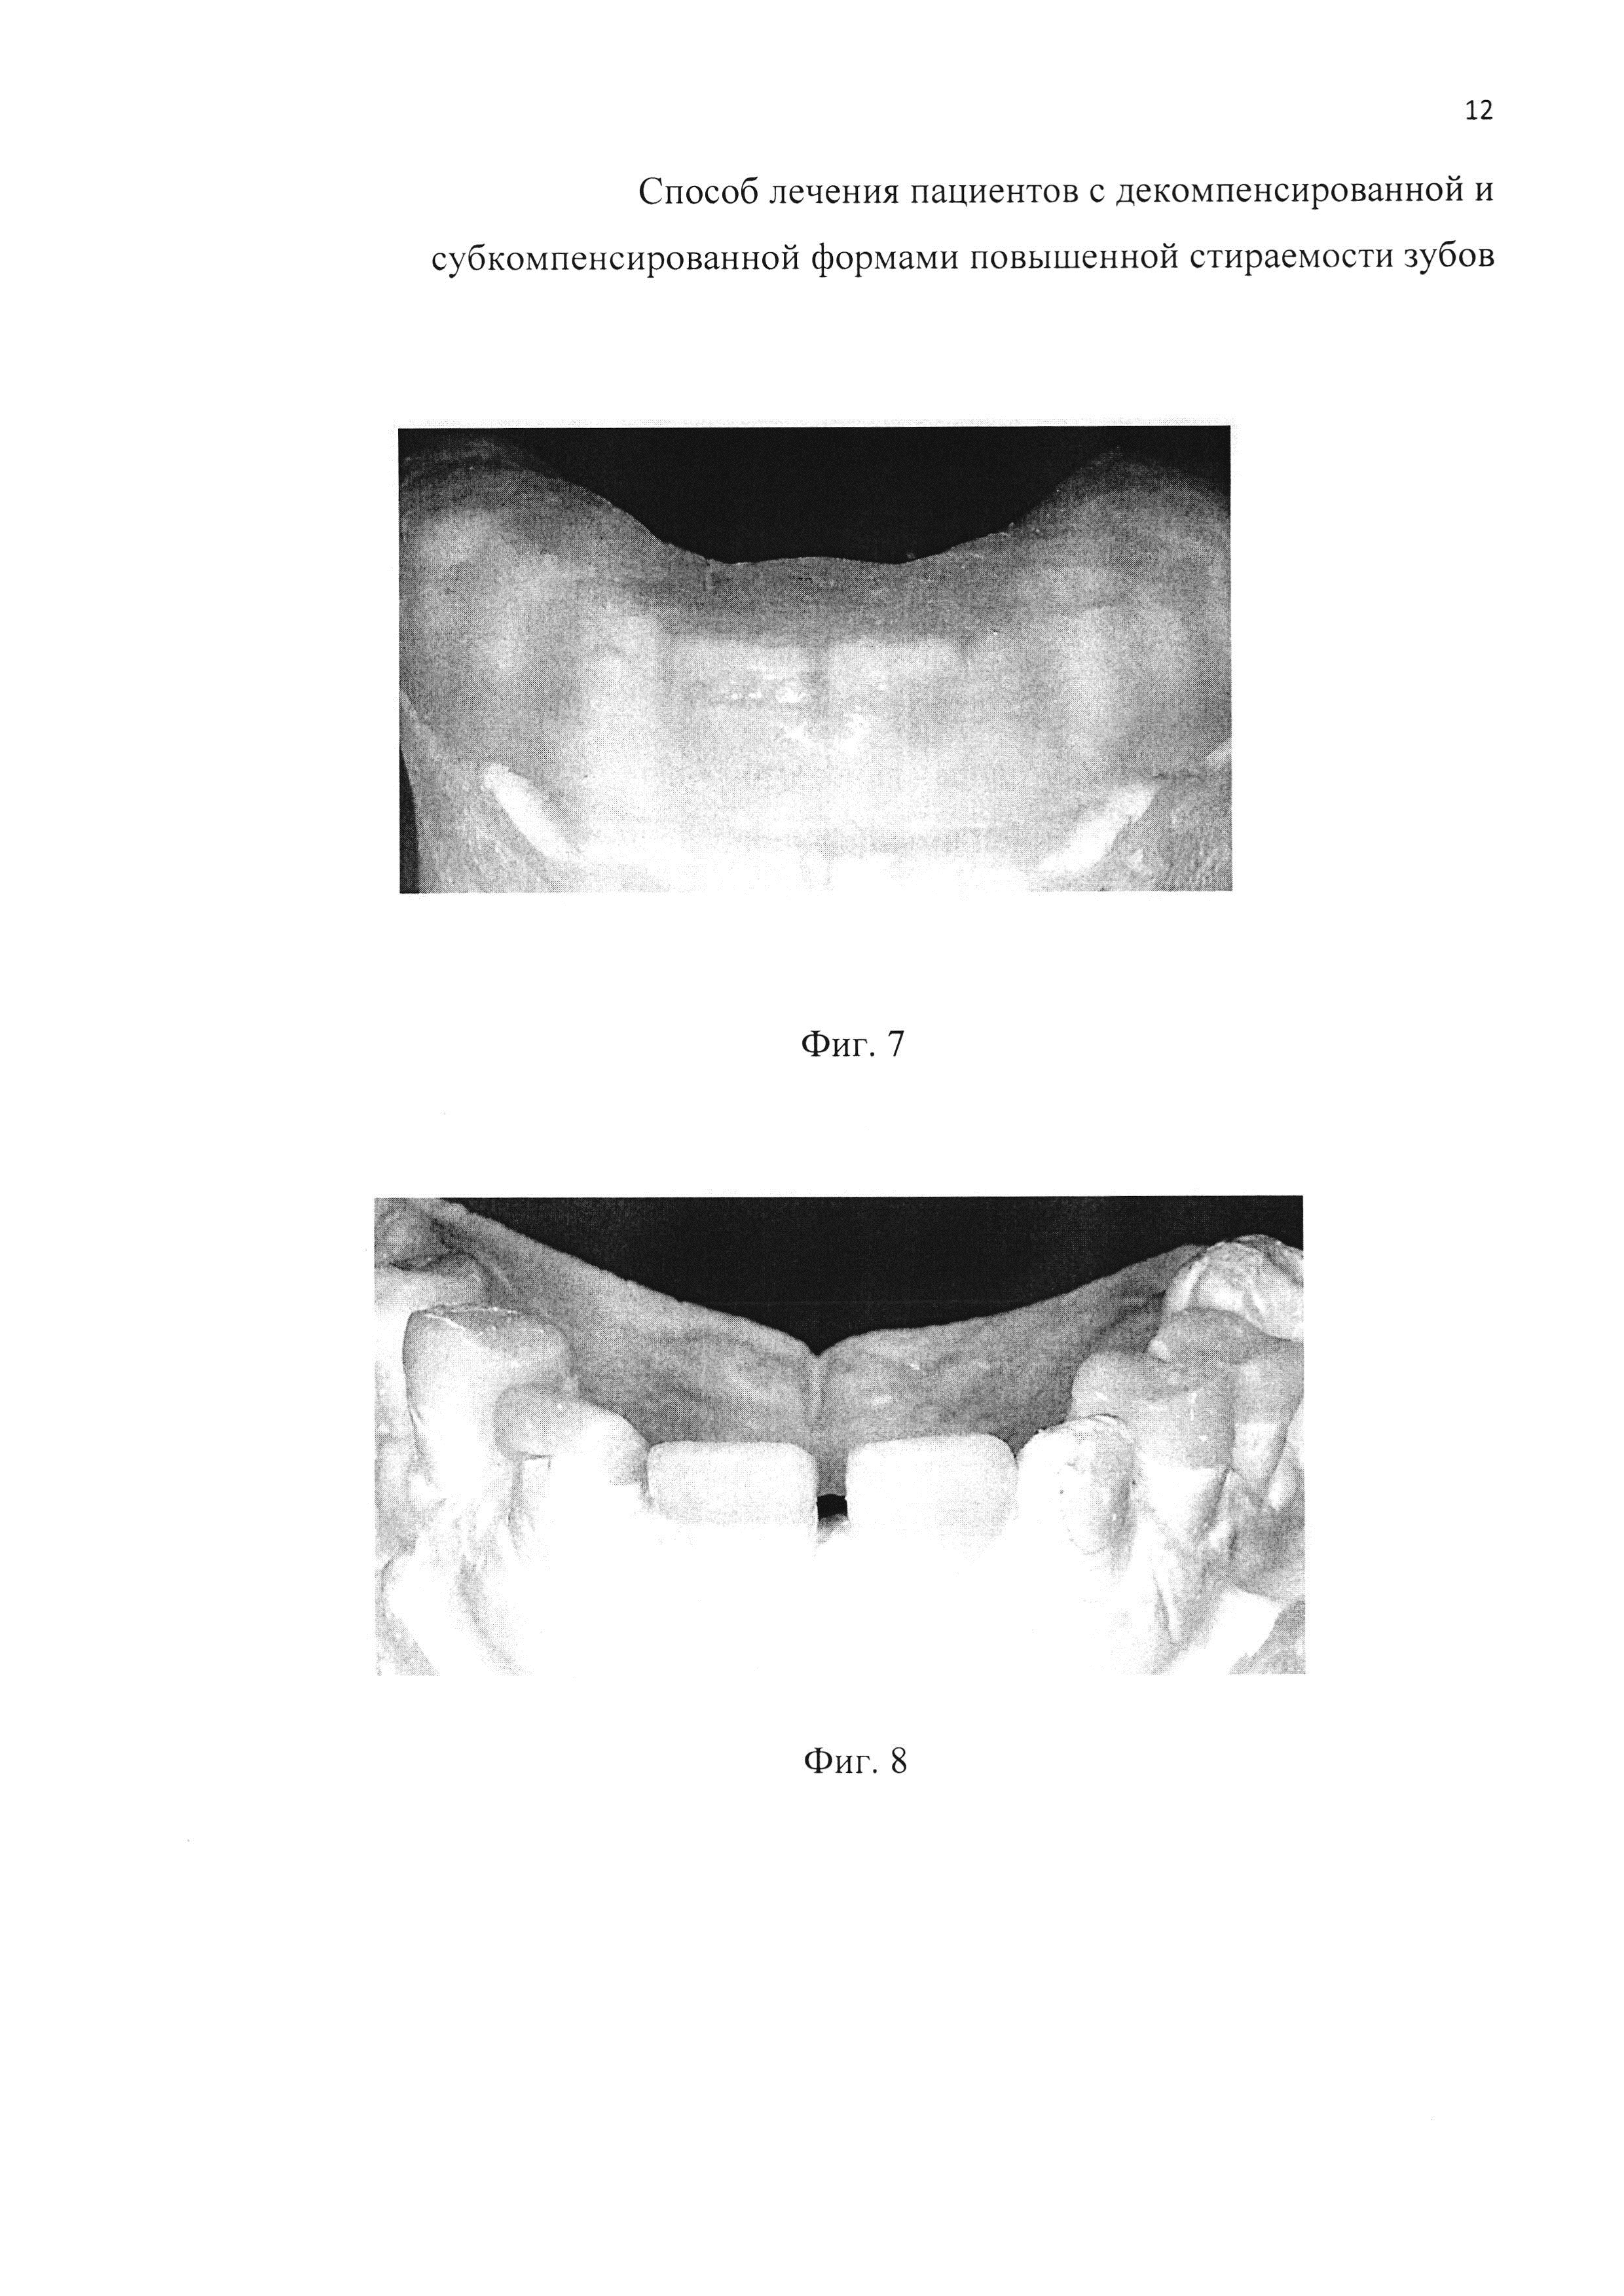 Способ лечения пациентов с декомпенсированной и субкомпенсированной формами повышенной стираемости зубов (варианты)